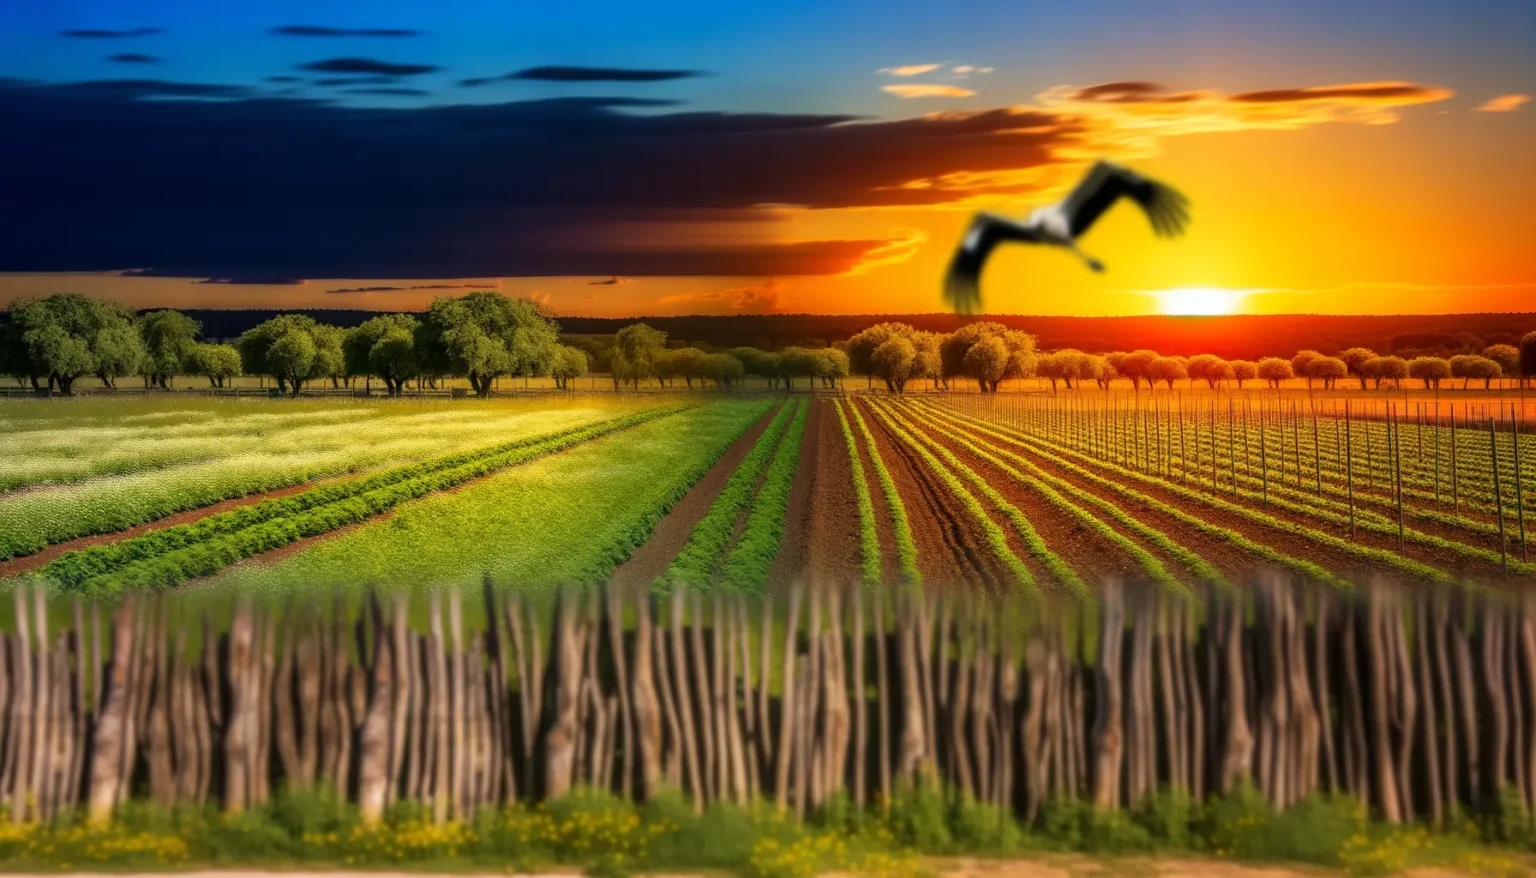 Ein lebhafter Sonnenuntergang über einer malerischen ländlichen Landschaft mit mehreren Reihen angepflanzter Felder in verschiedenen Grüntönen, Obstbäumen im Hintergrund und einem Zaun im Vordergrund. Im rechten Bereich des Bildes ist ein unscharfer Vogel im Flug gegen den Himmel mit warmen Orangetönen zu sehen.